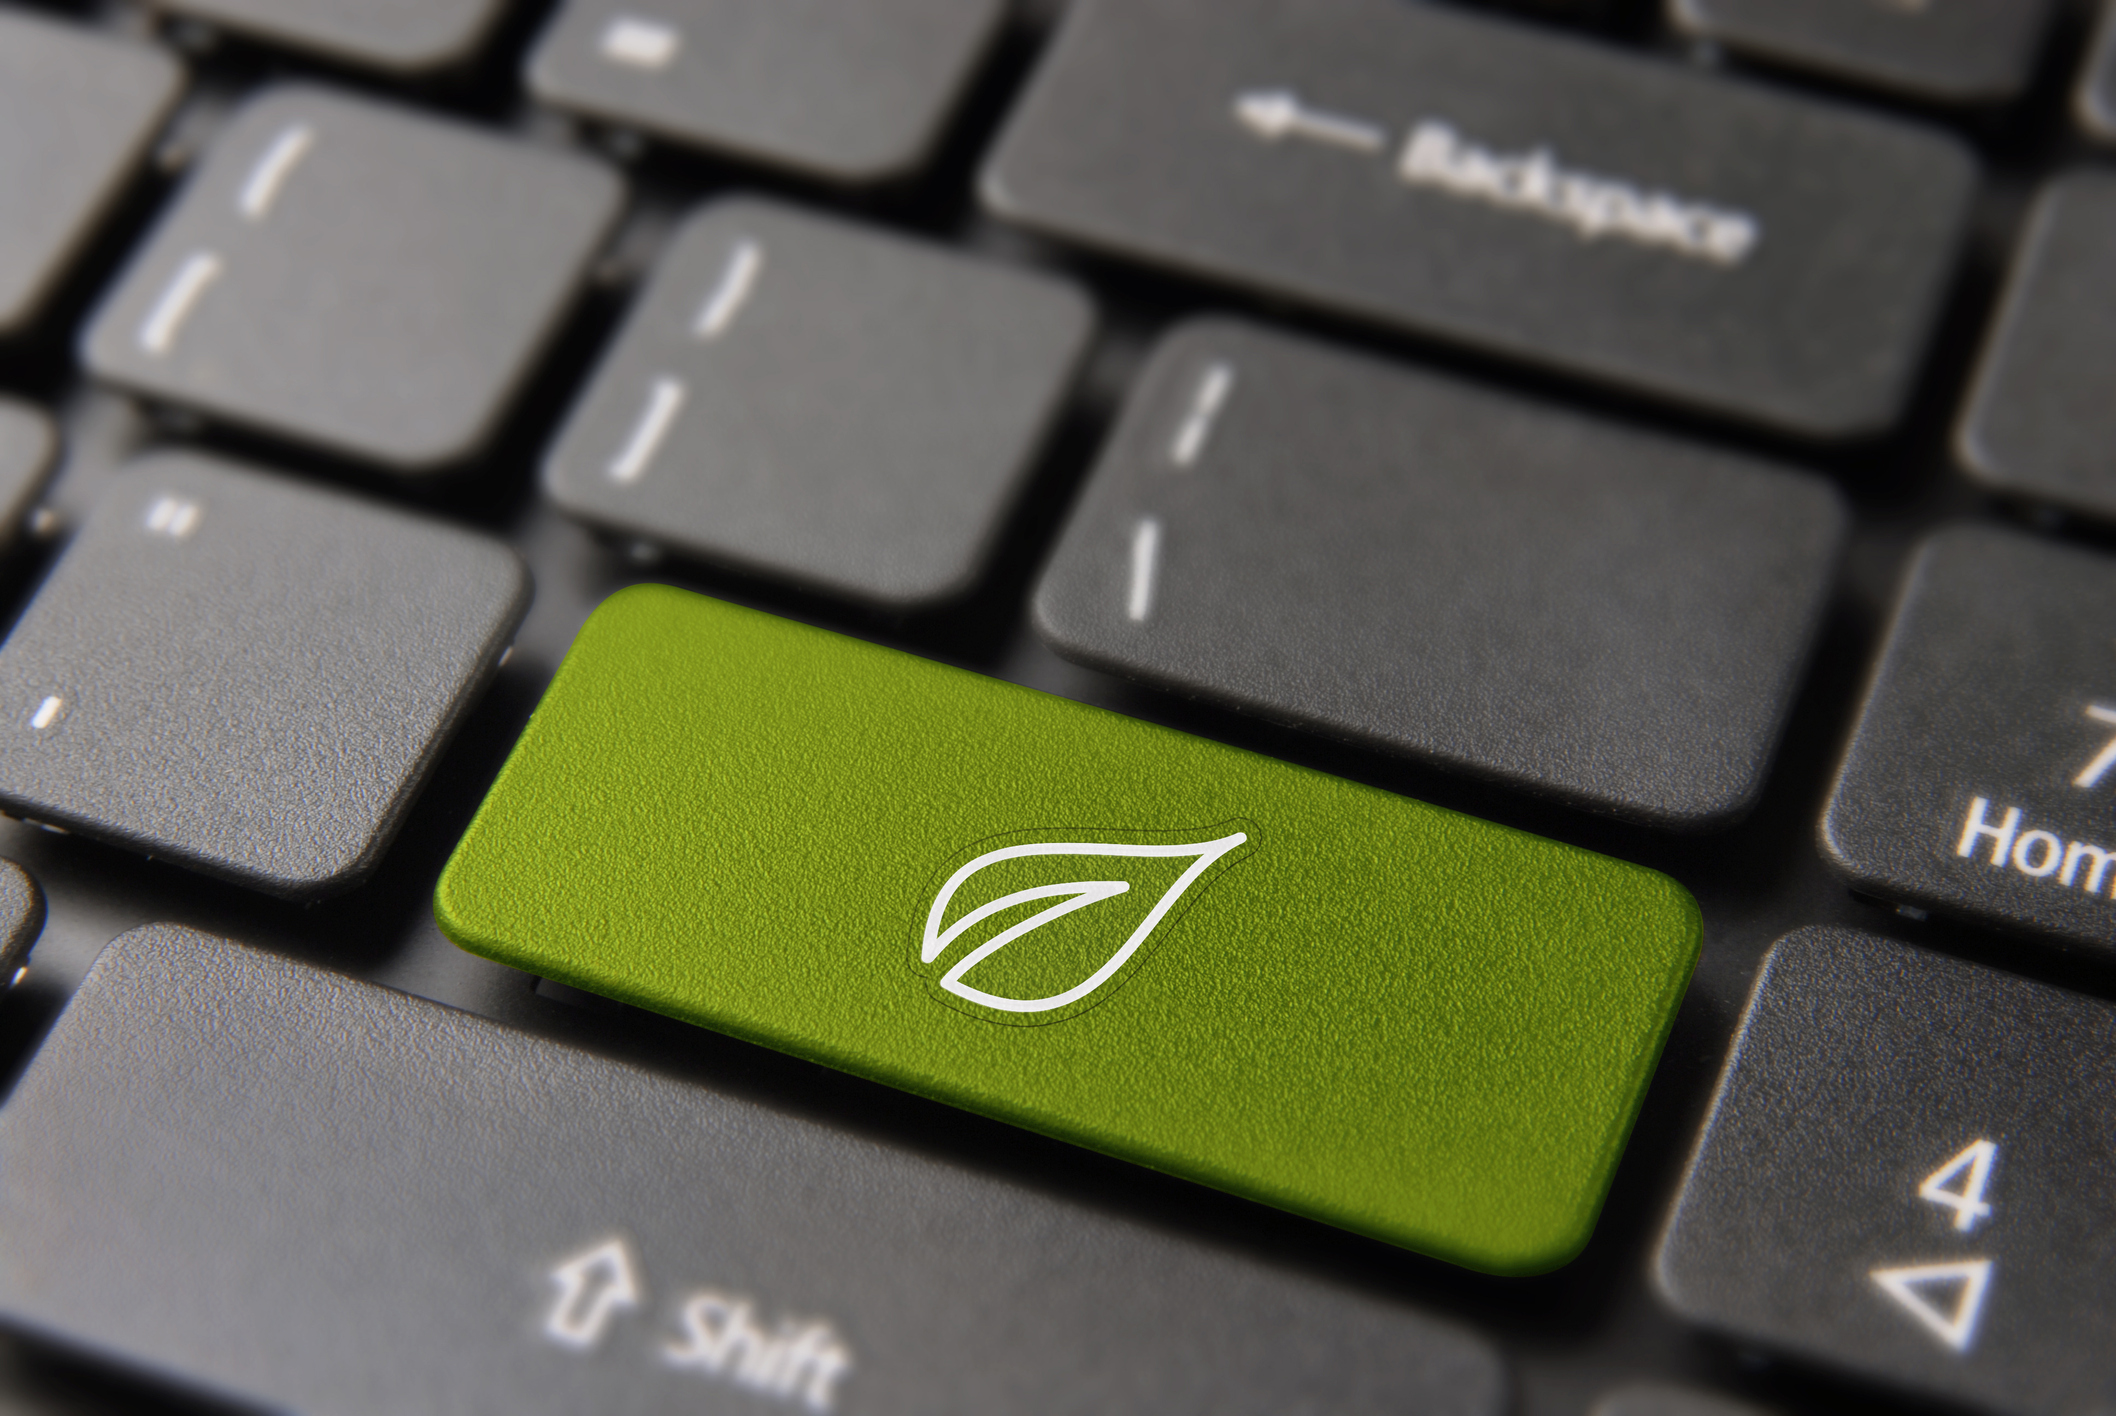 Keyboard with green leaf key